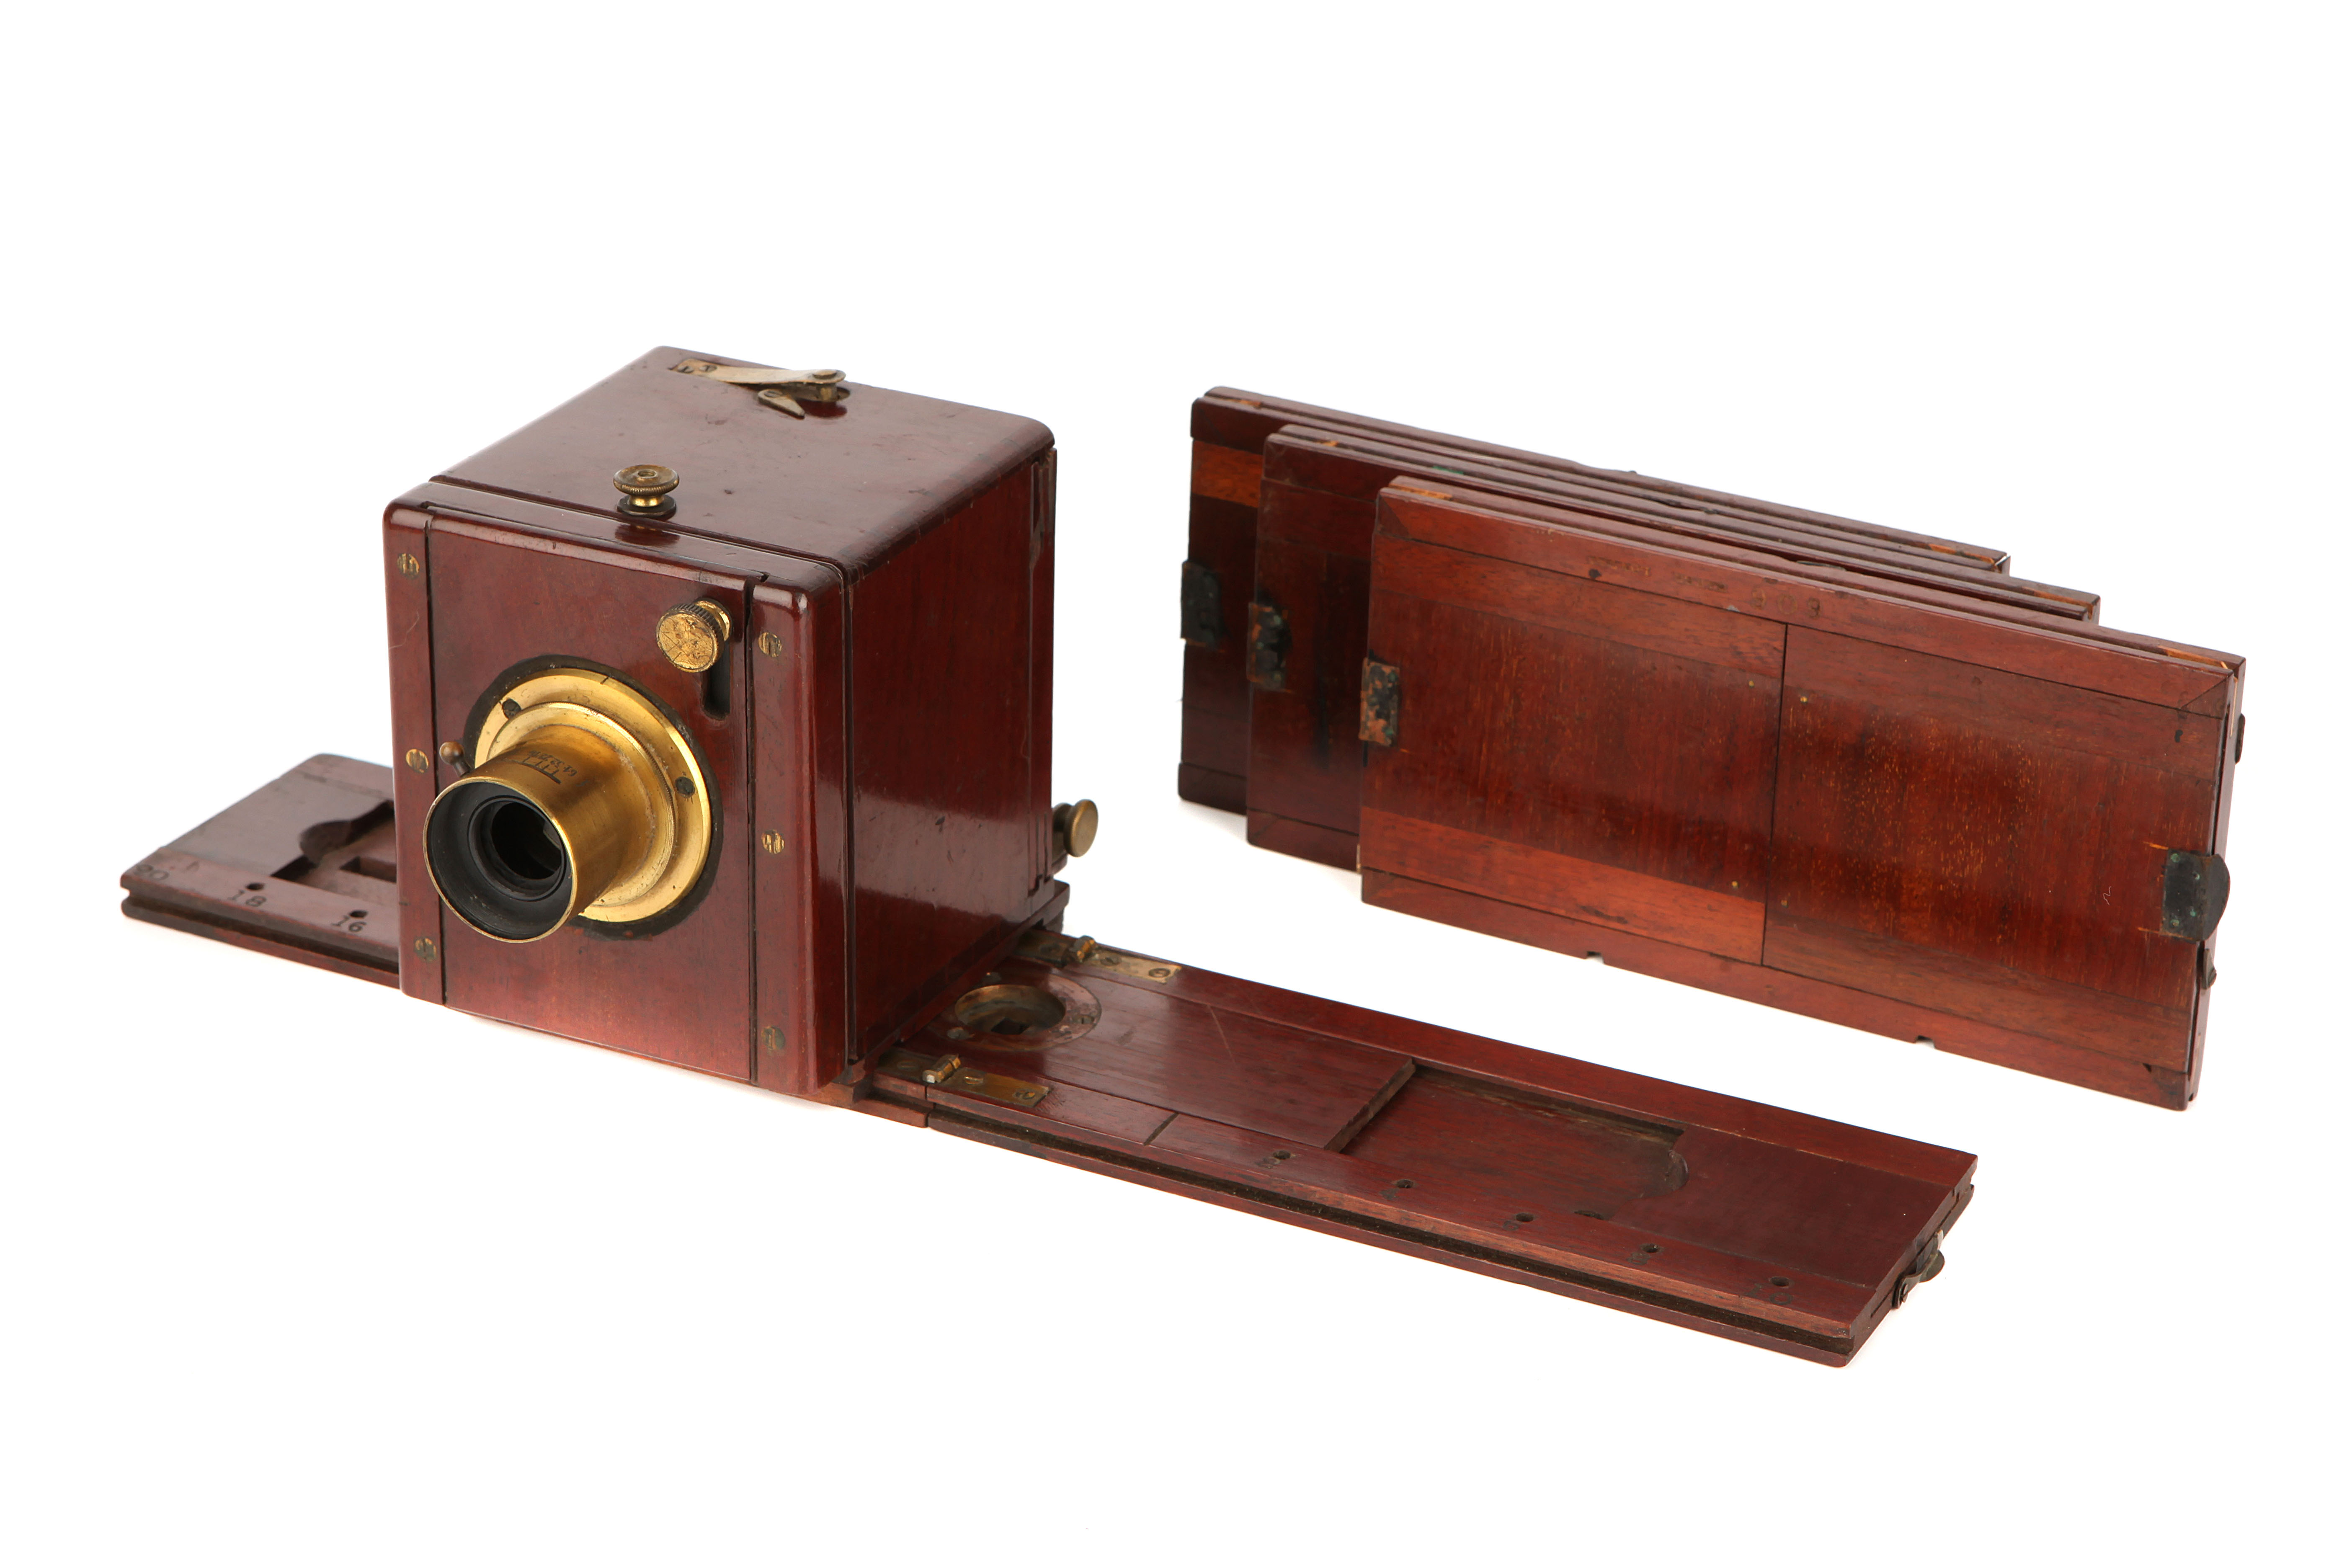 A C. T. Crouchton 2¾x3¼" Stereo Sliding Wet Plate Mahogany Camera,